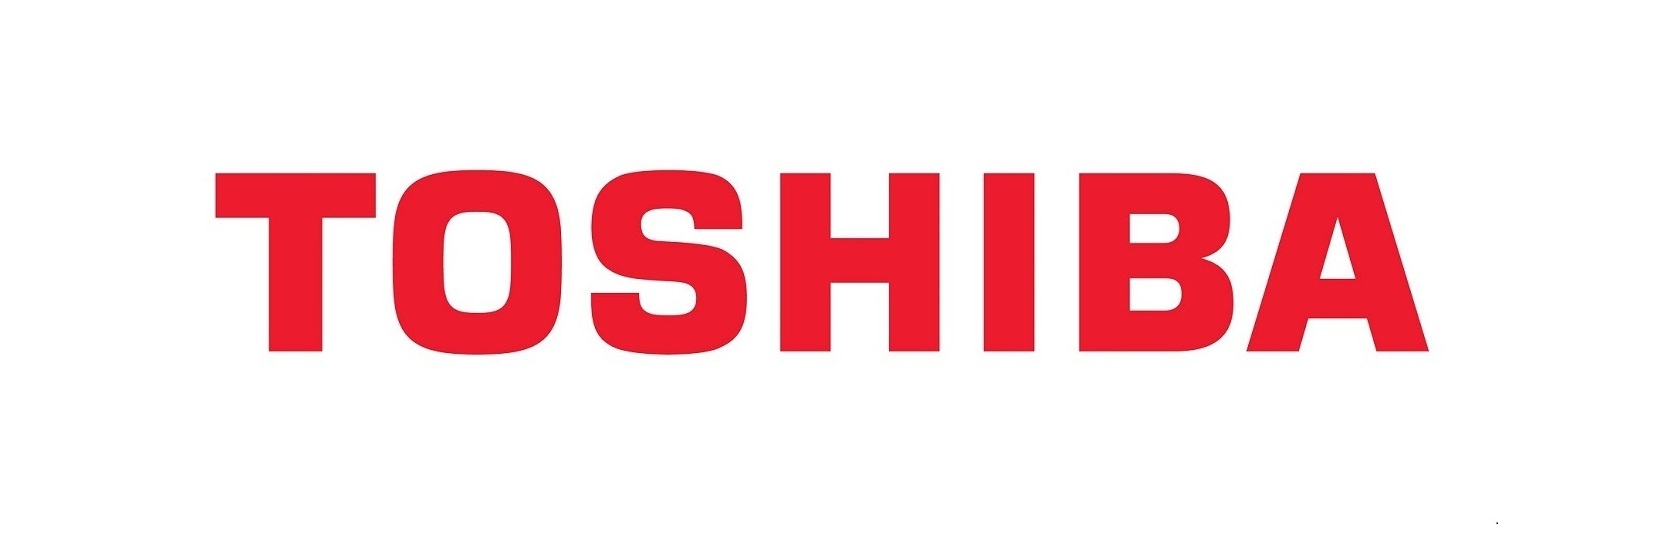 Toshiba кондиционеры купить в новосибирске и бердске